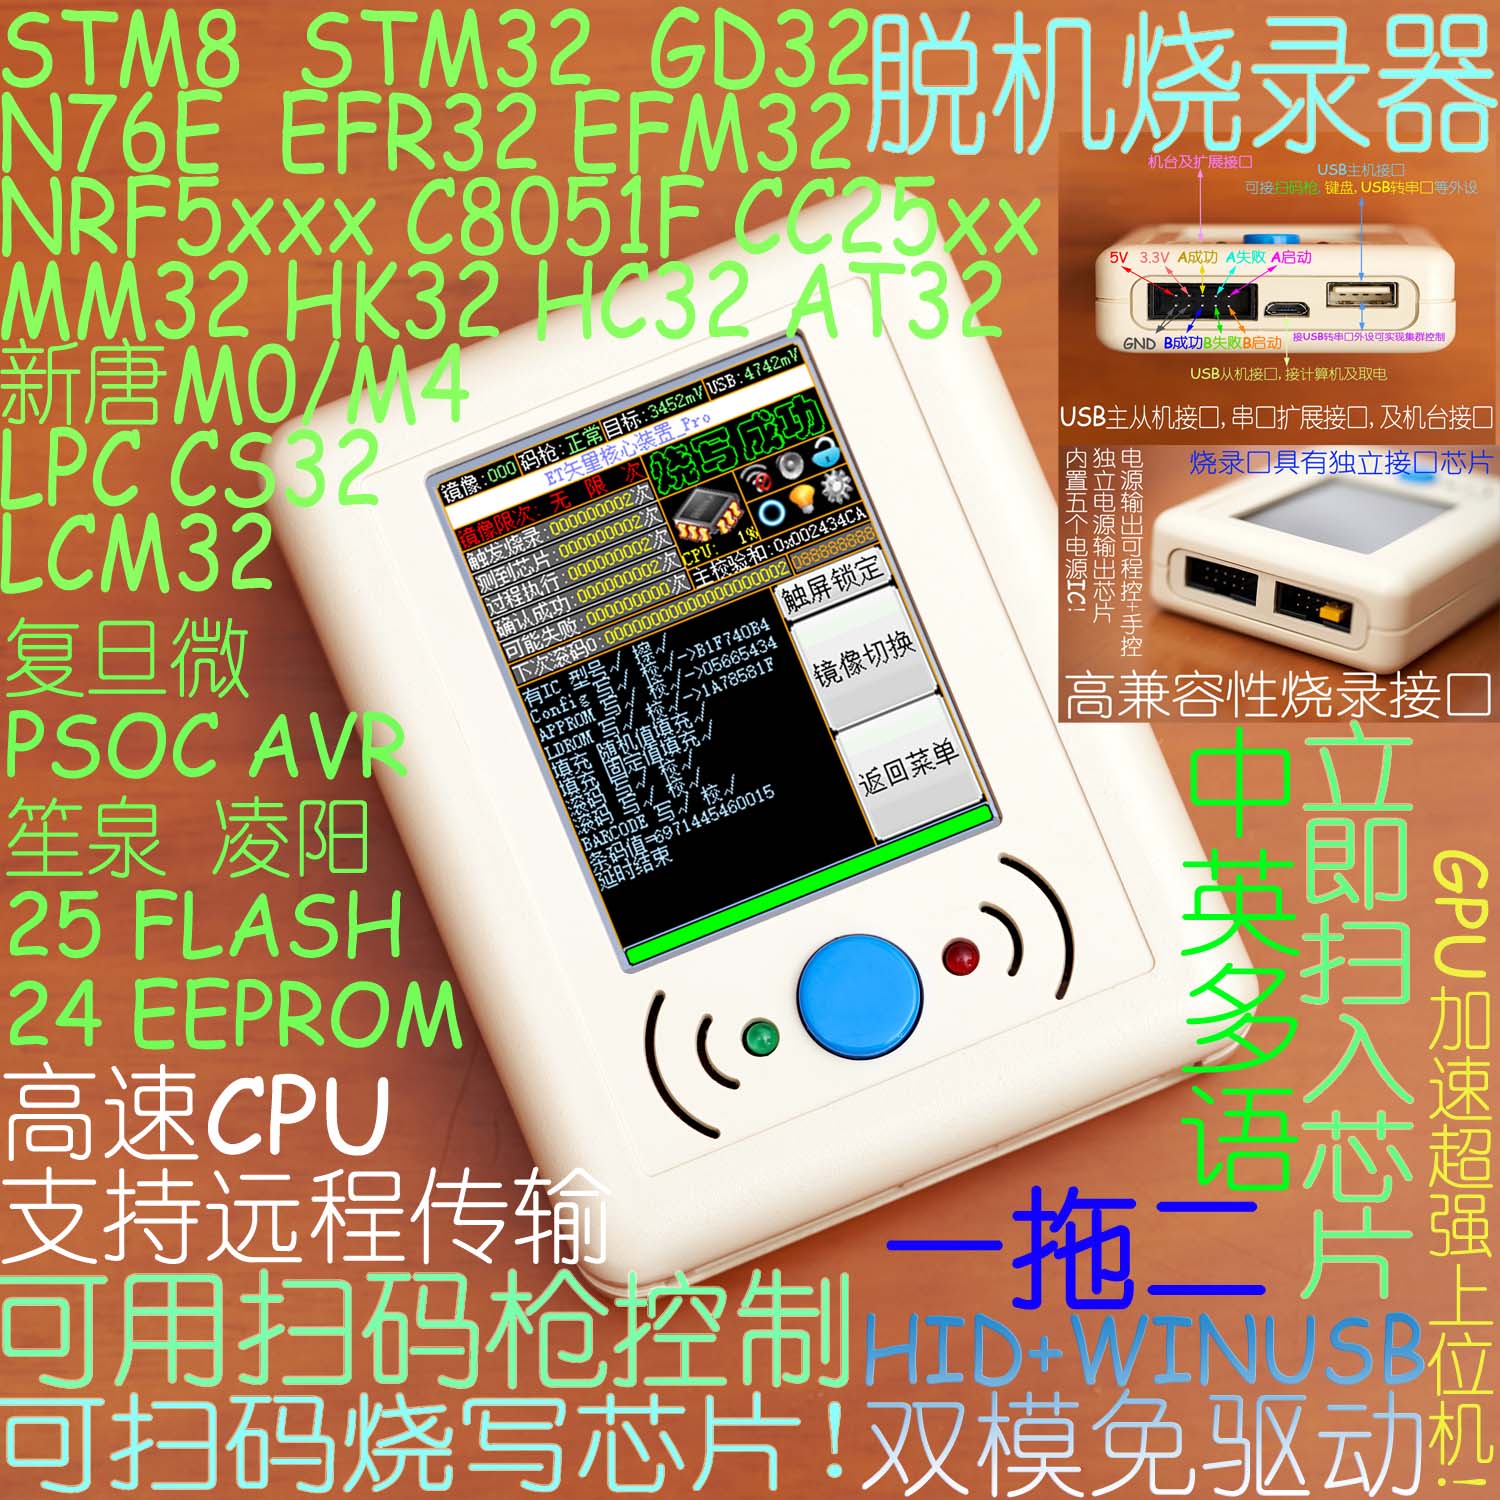 STM8STM32GD32MM32NRF5LPC8051FAVRN76HC32脱机烧录编程器下载器